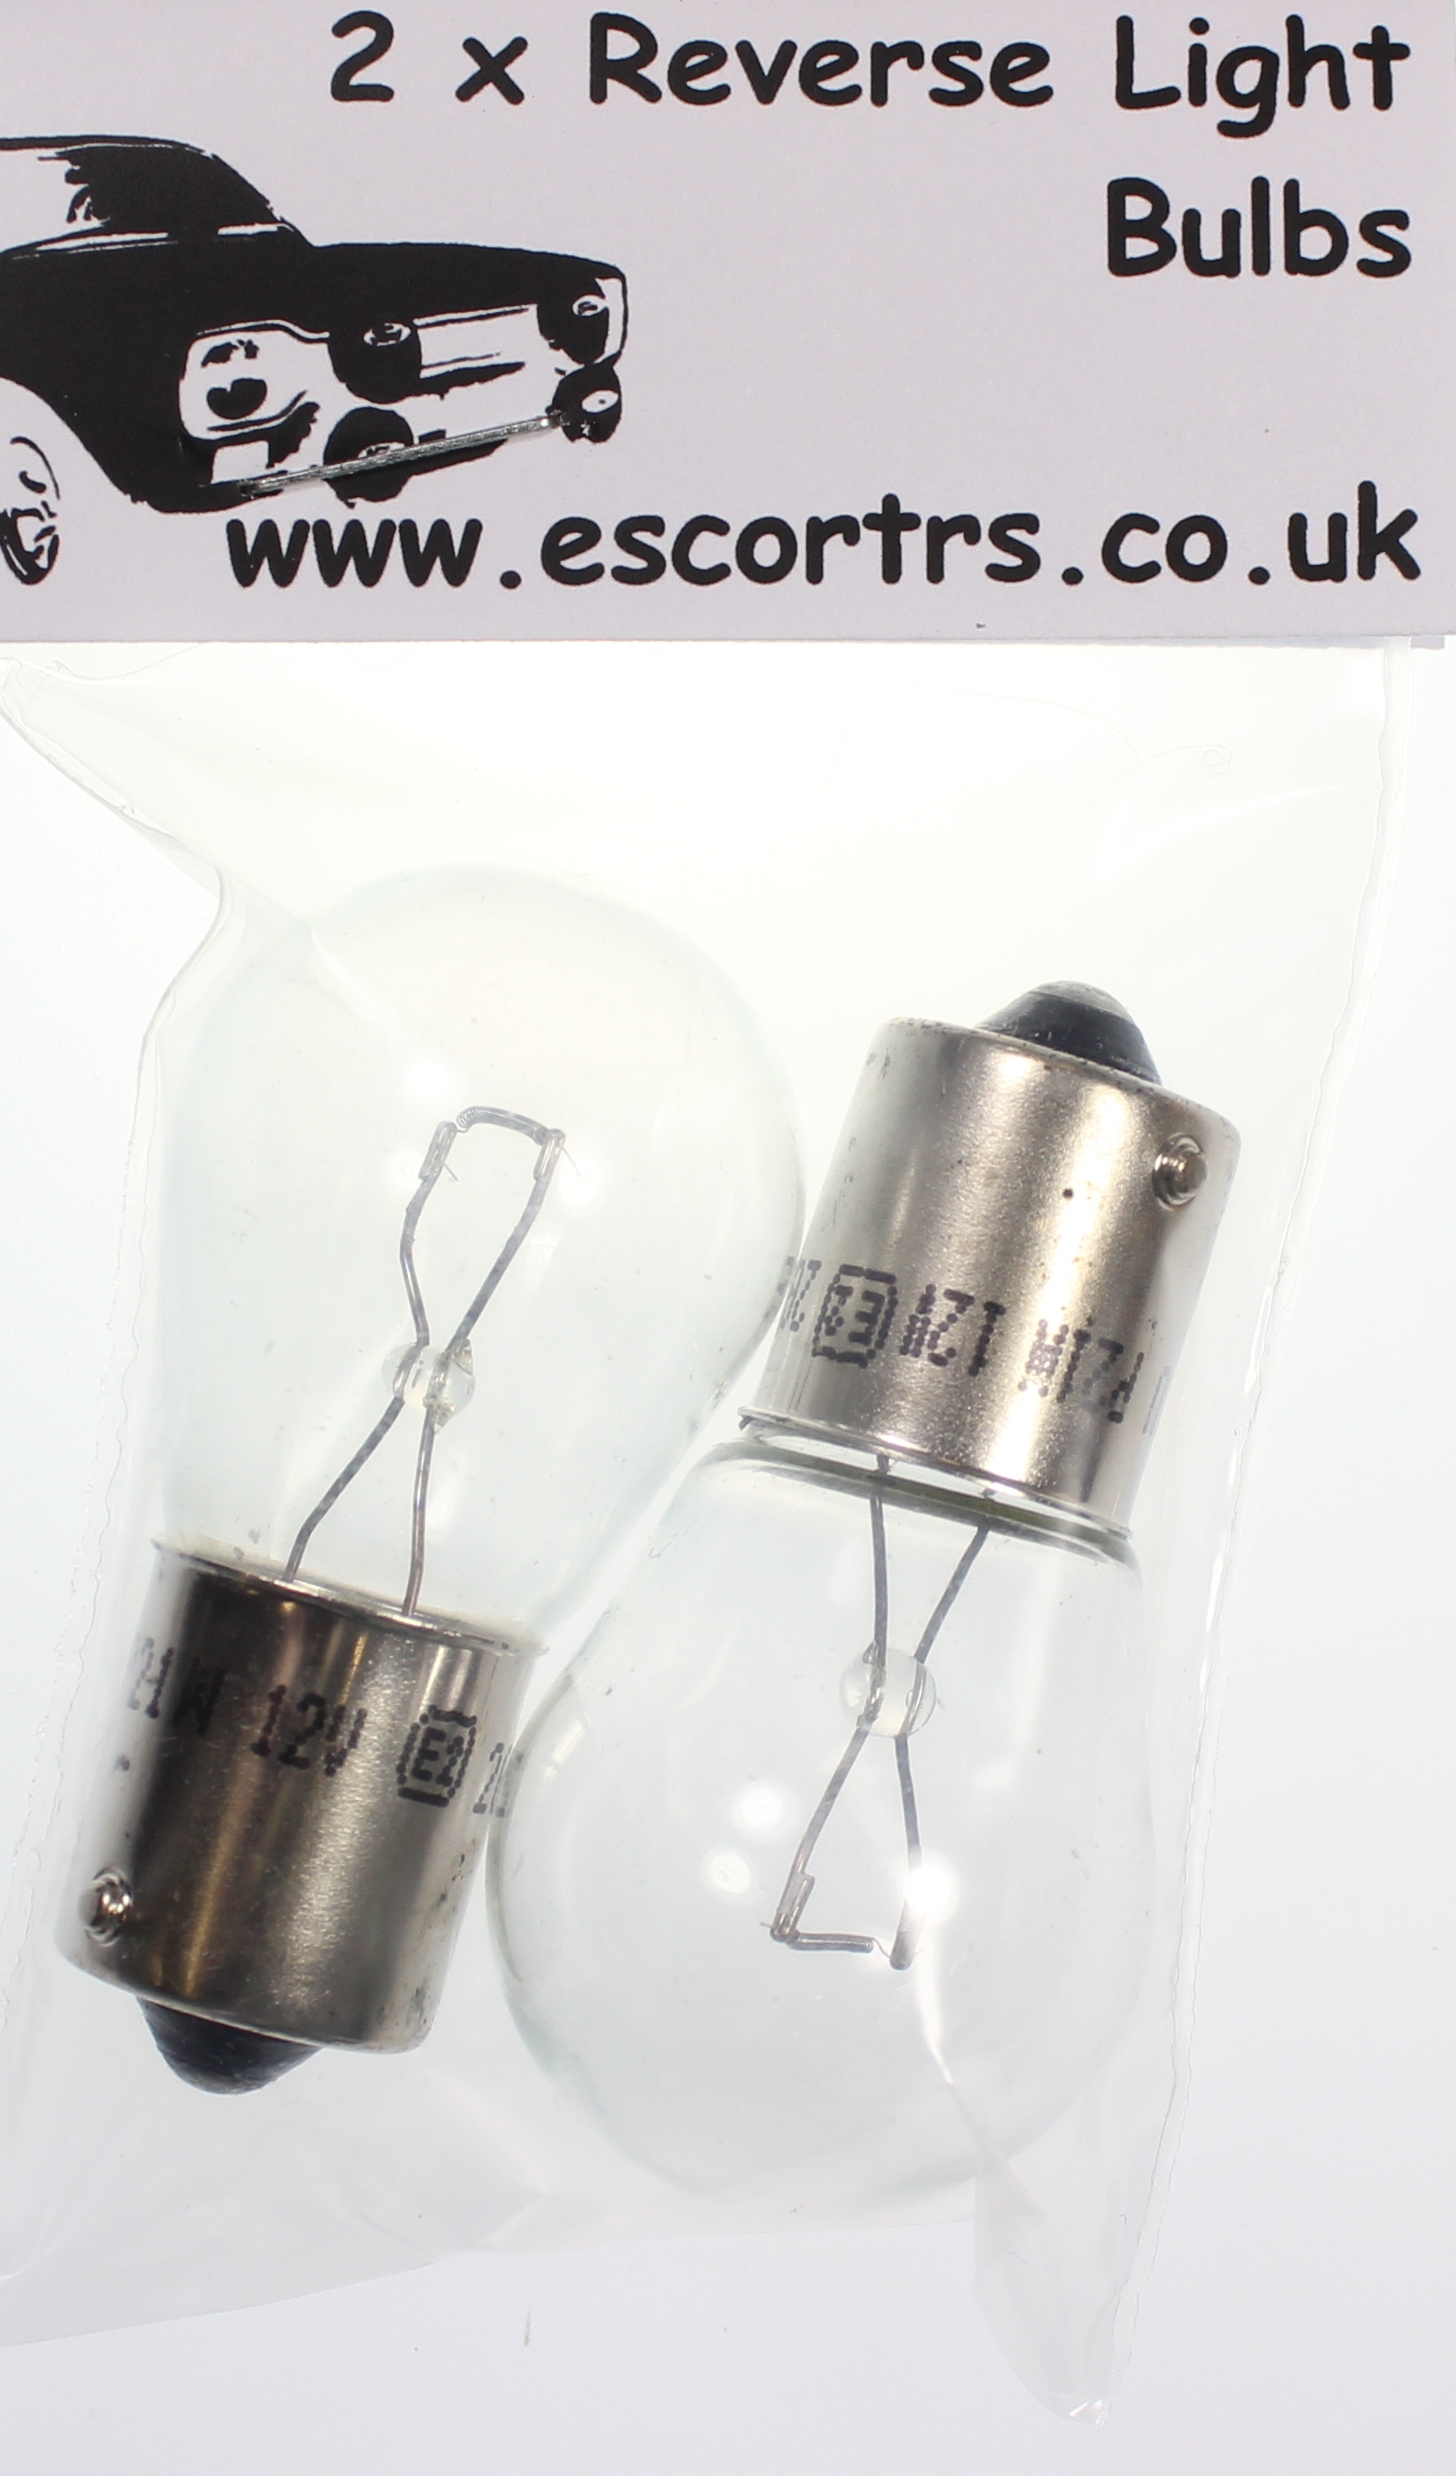 Mk1 Escort Reverse Light Bulbs x 2 £1.99